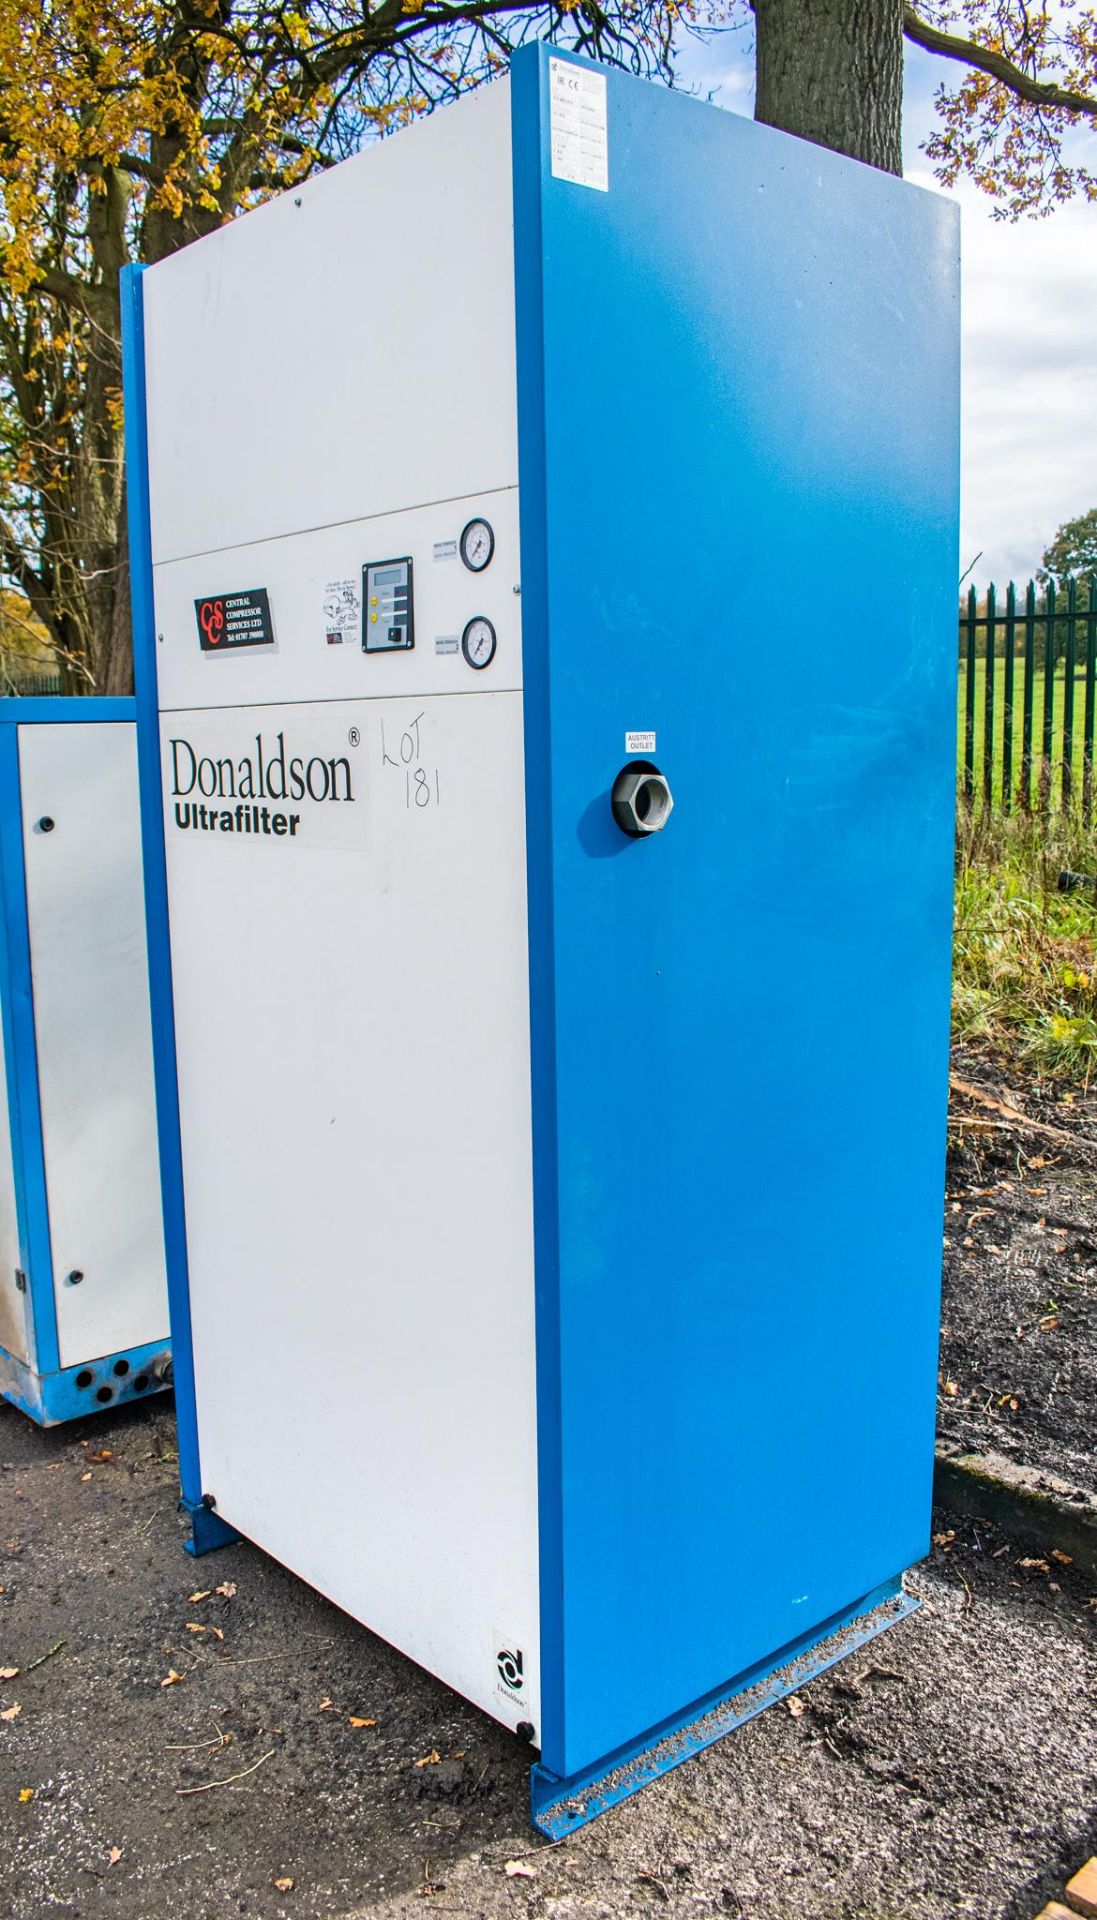 Donaldson ALD 0850 filtration unit